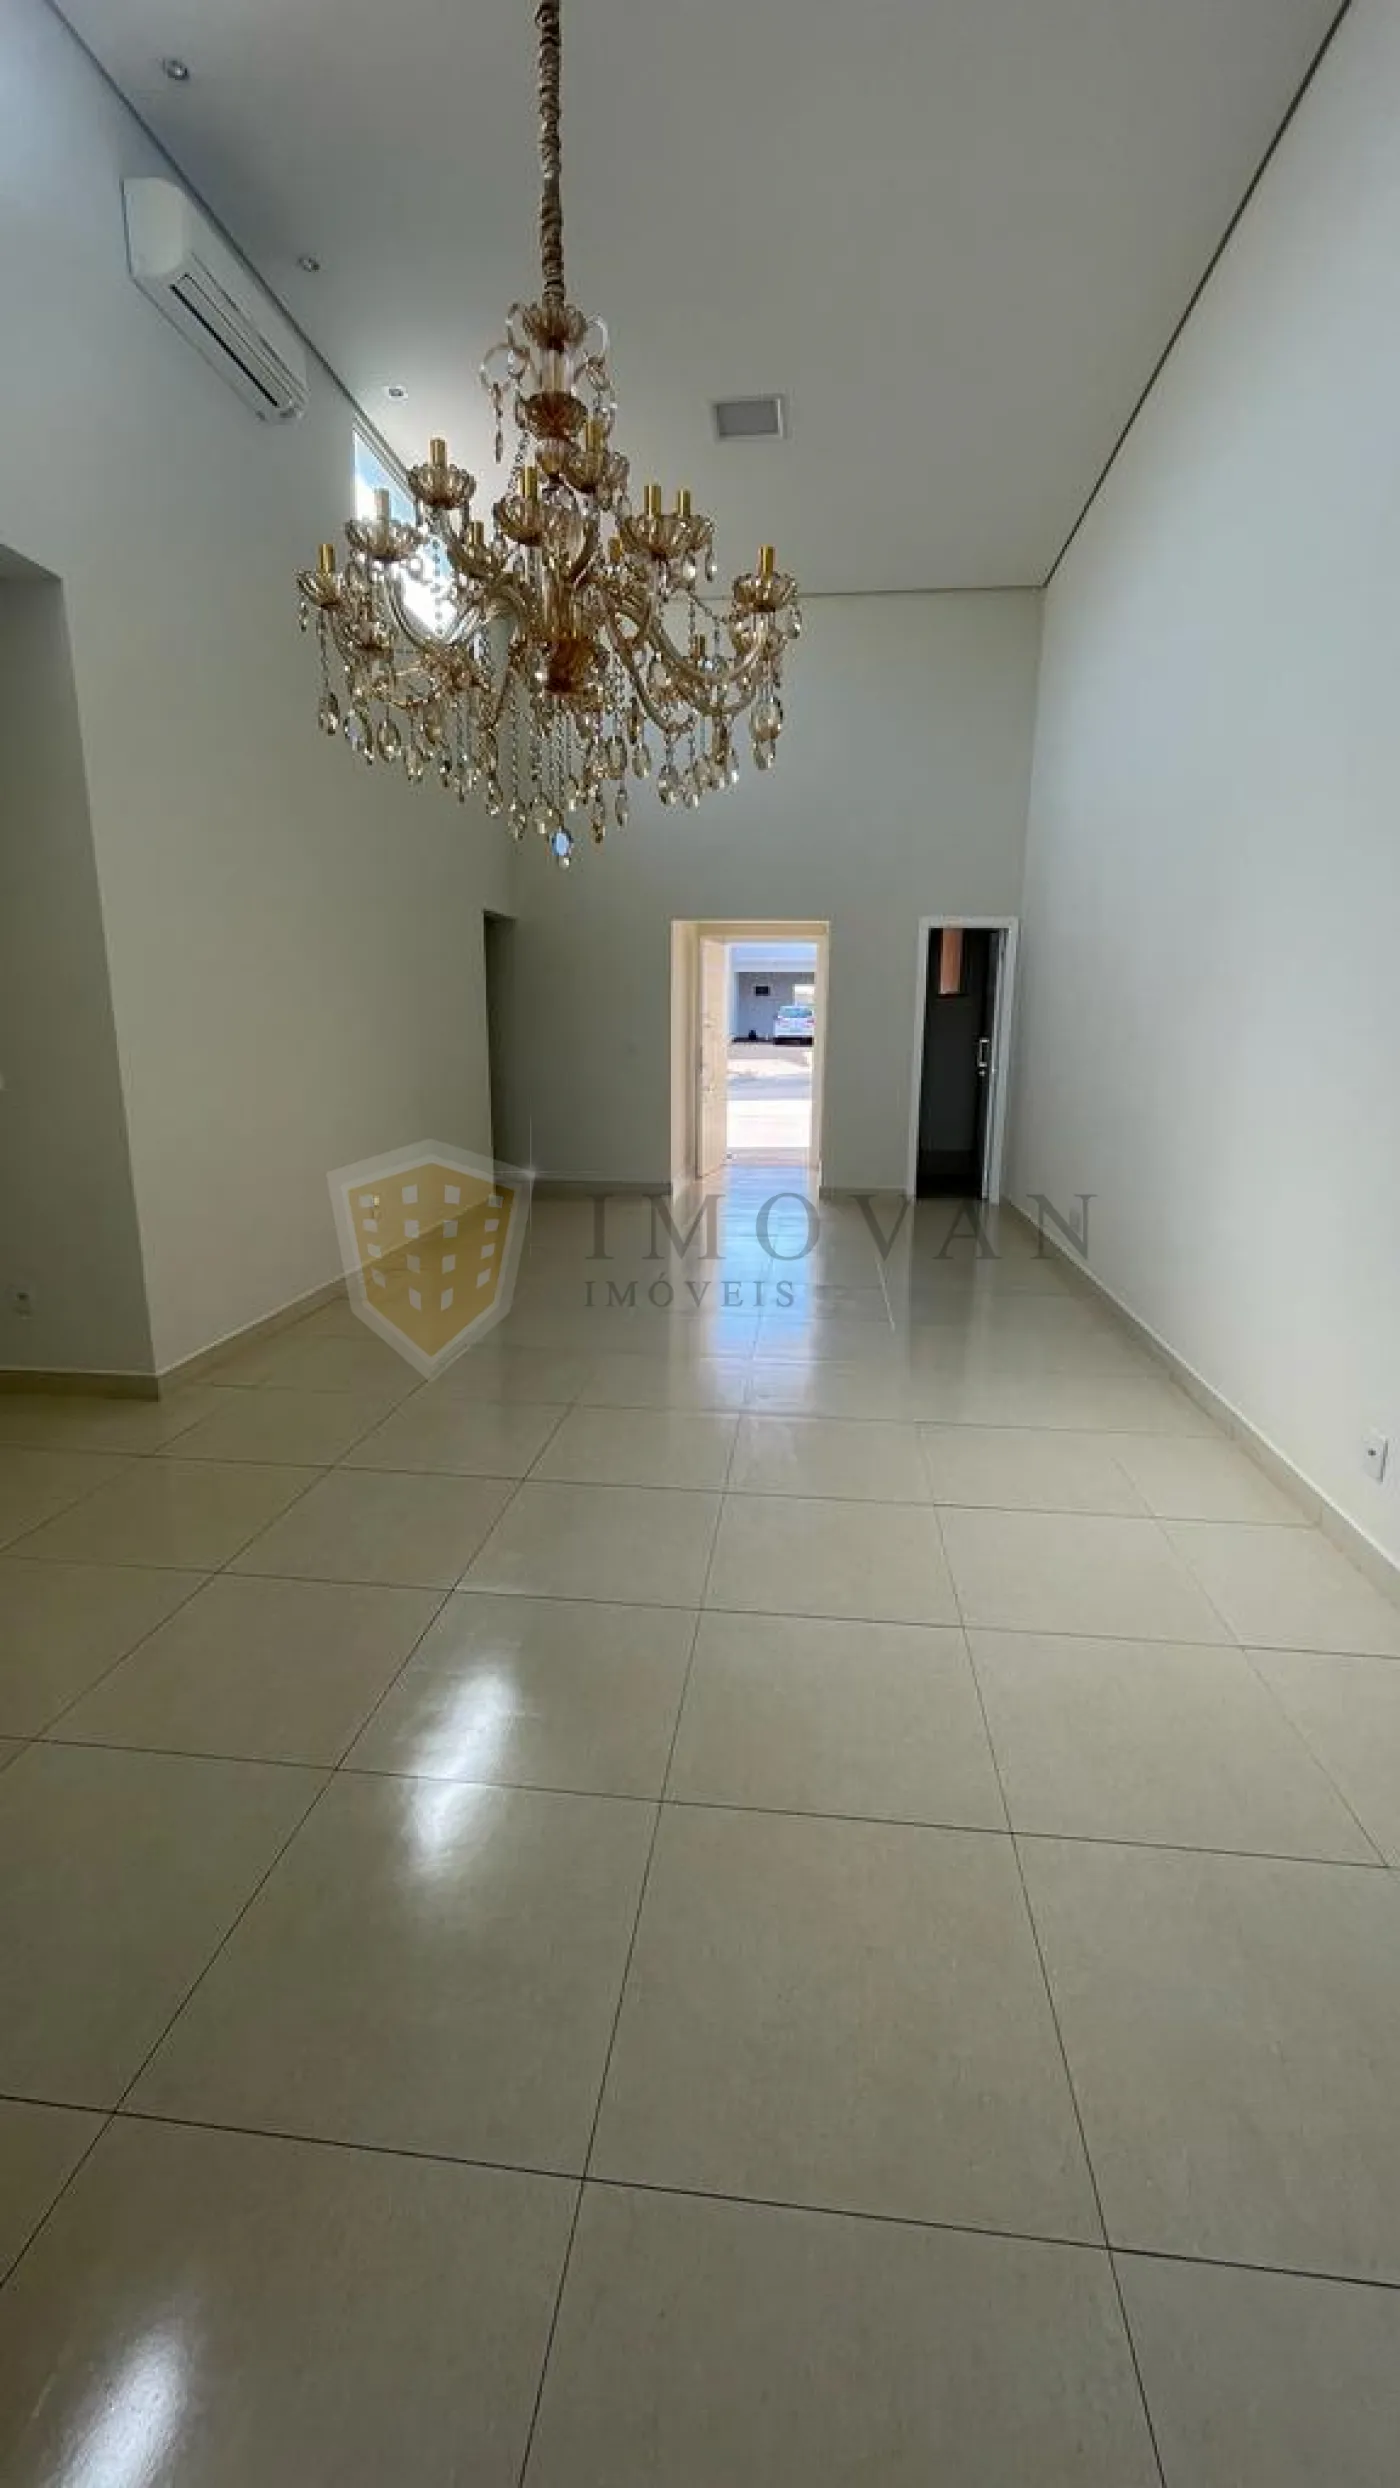 Comprar Casa / Condomínio em Bonfim Paulista R$ 1.050.000,00 - Foto 5